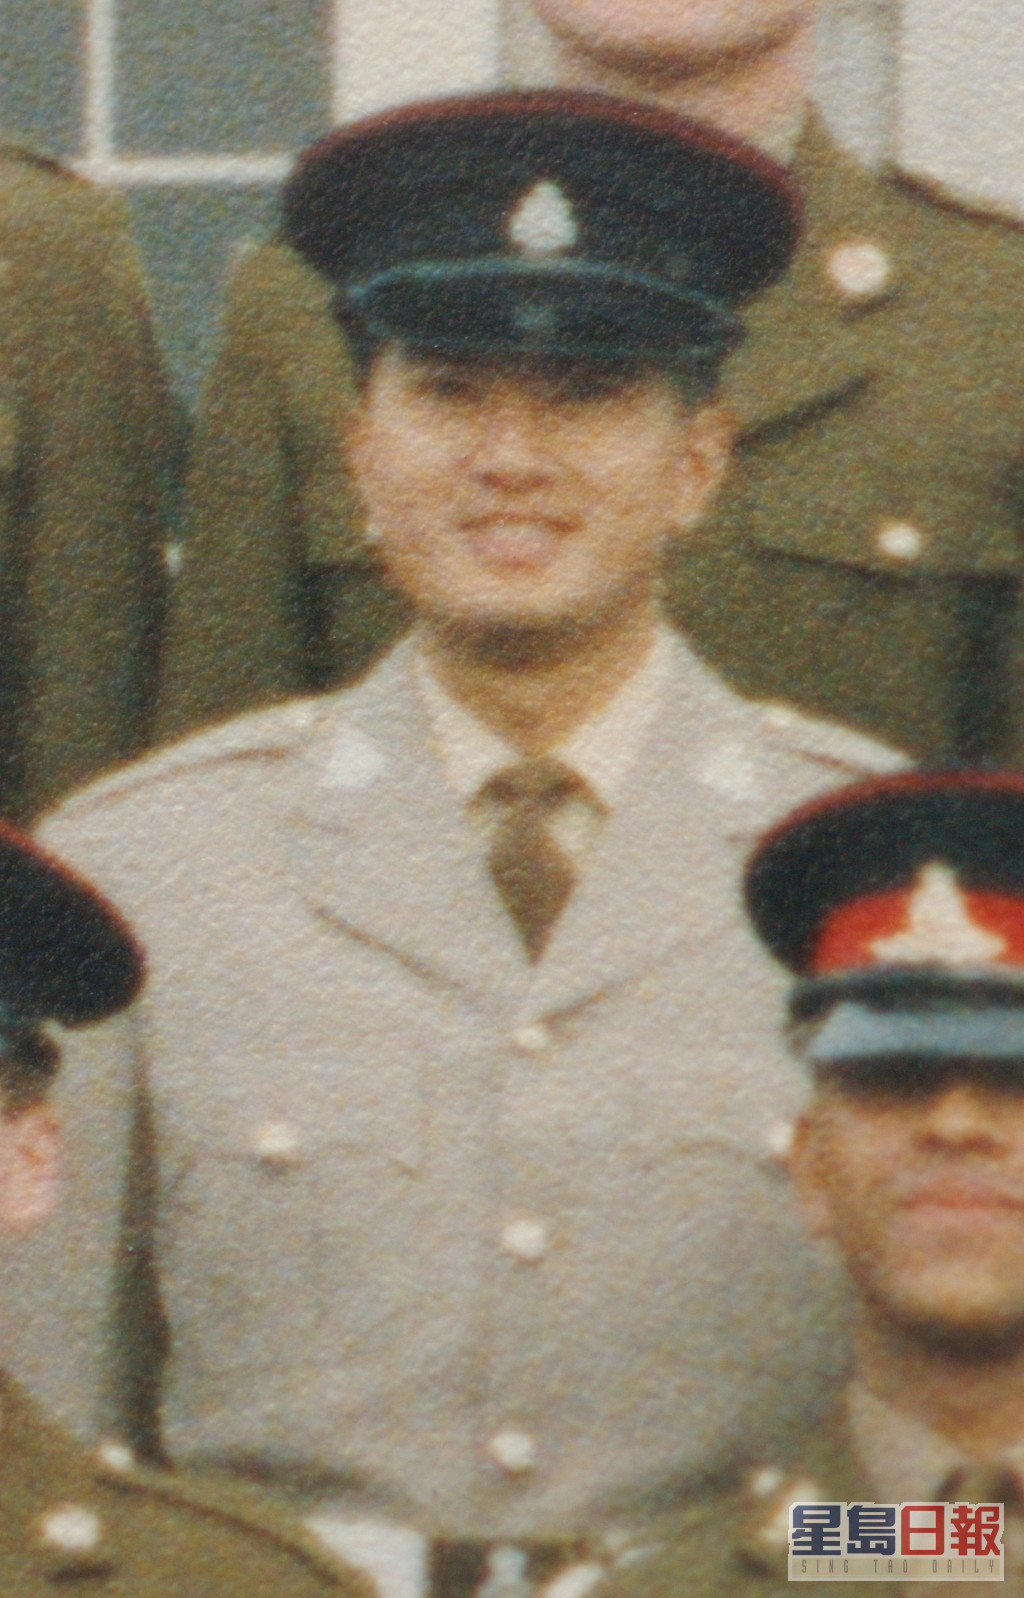 邓梓峰年青时曾获选到英国的The Royal Military Academy Sandhurst军校接受半个月的军官训练。